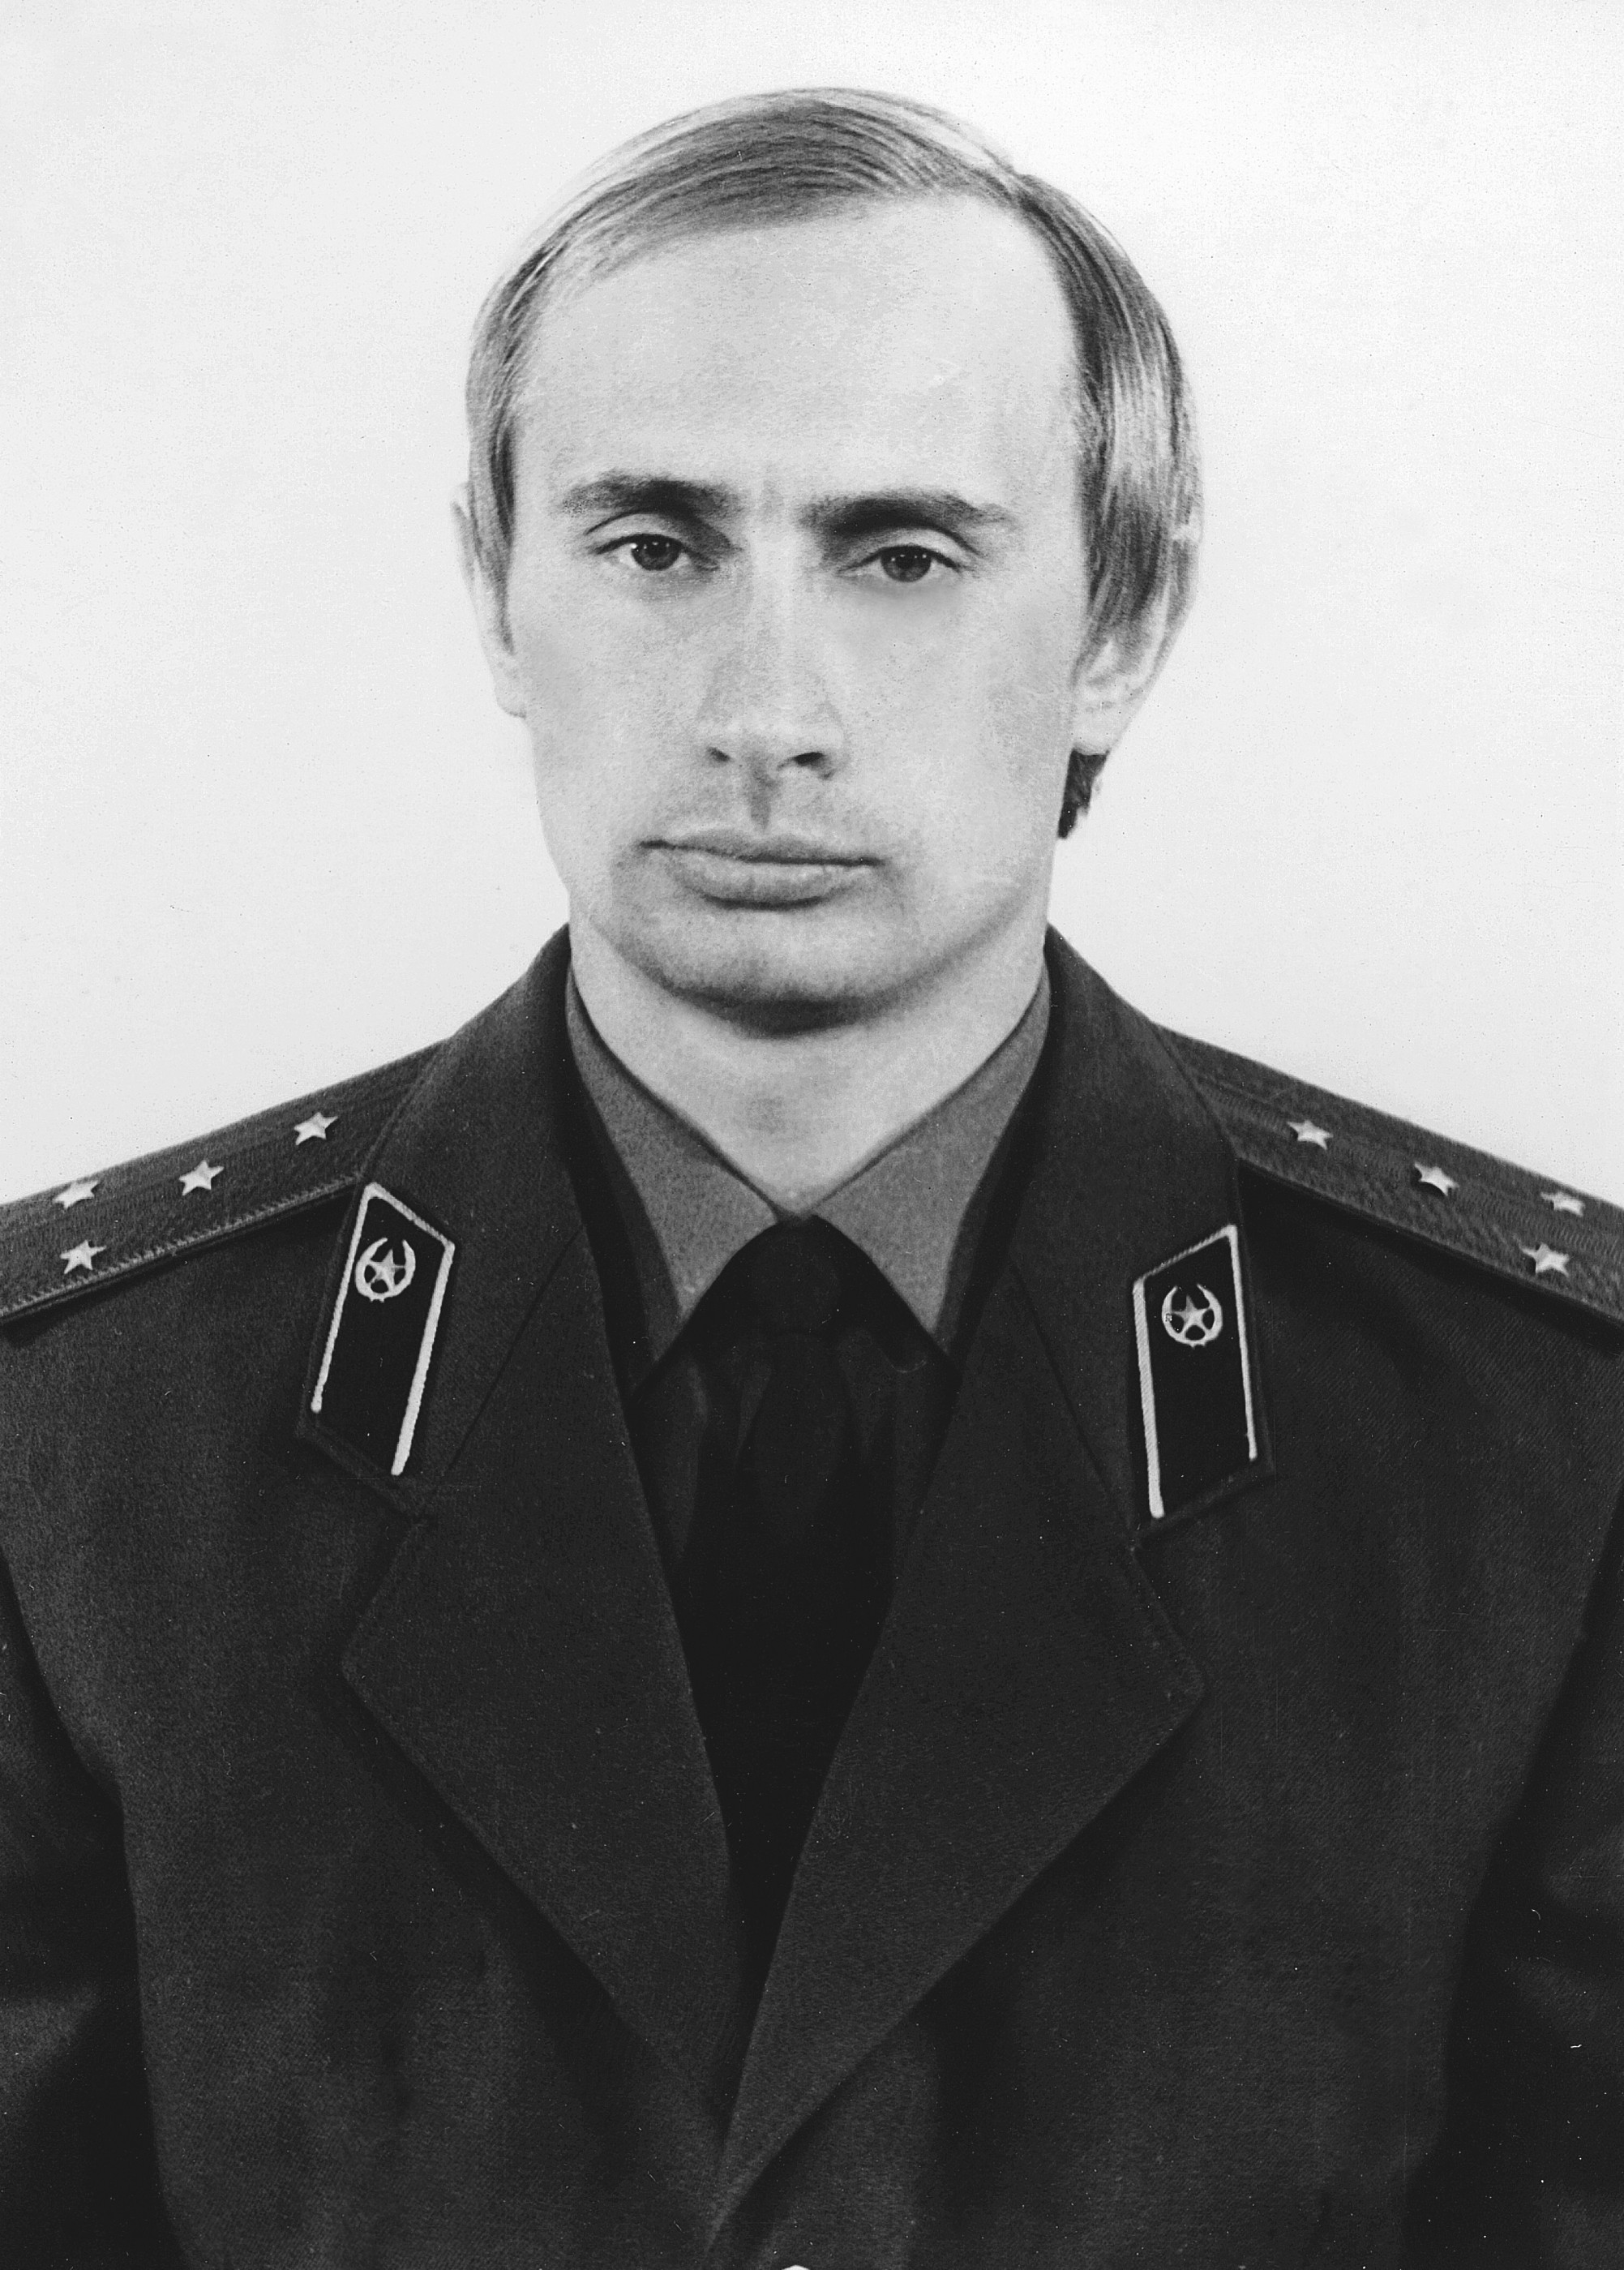 Ficheiro:Vladimir Putin in KGB uniform.jpg